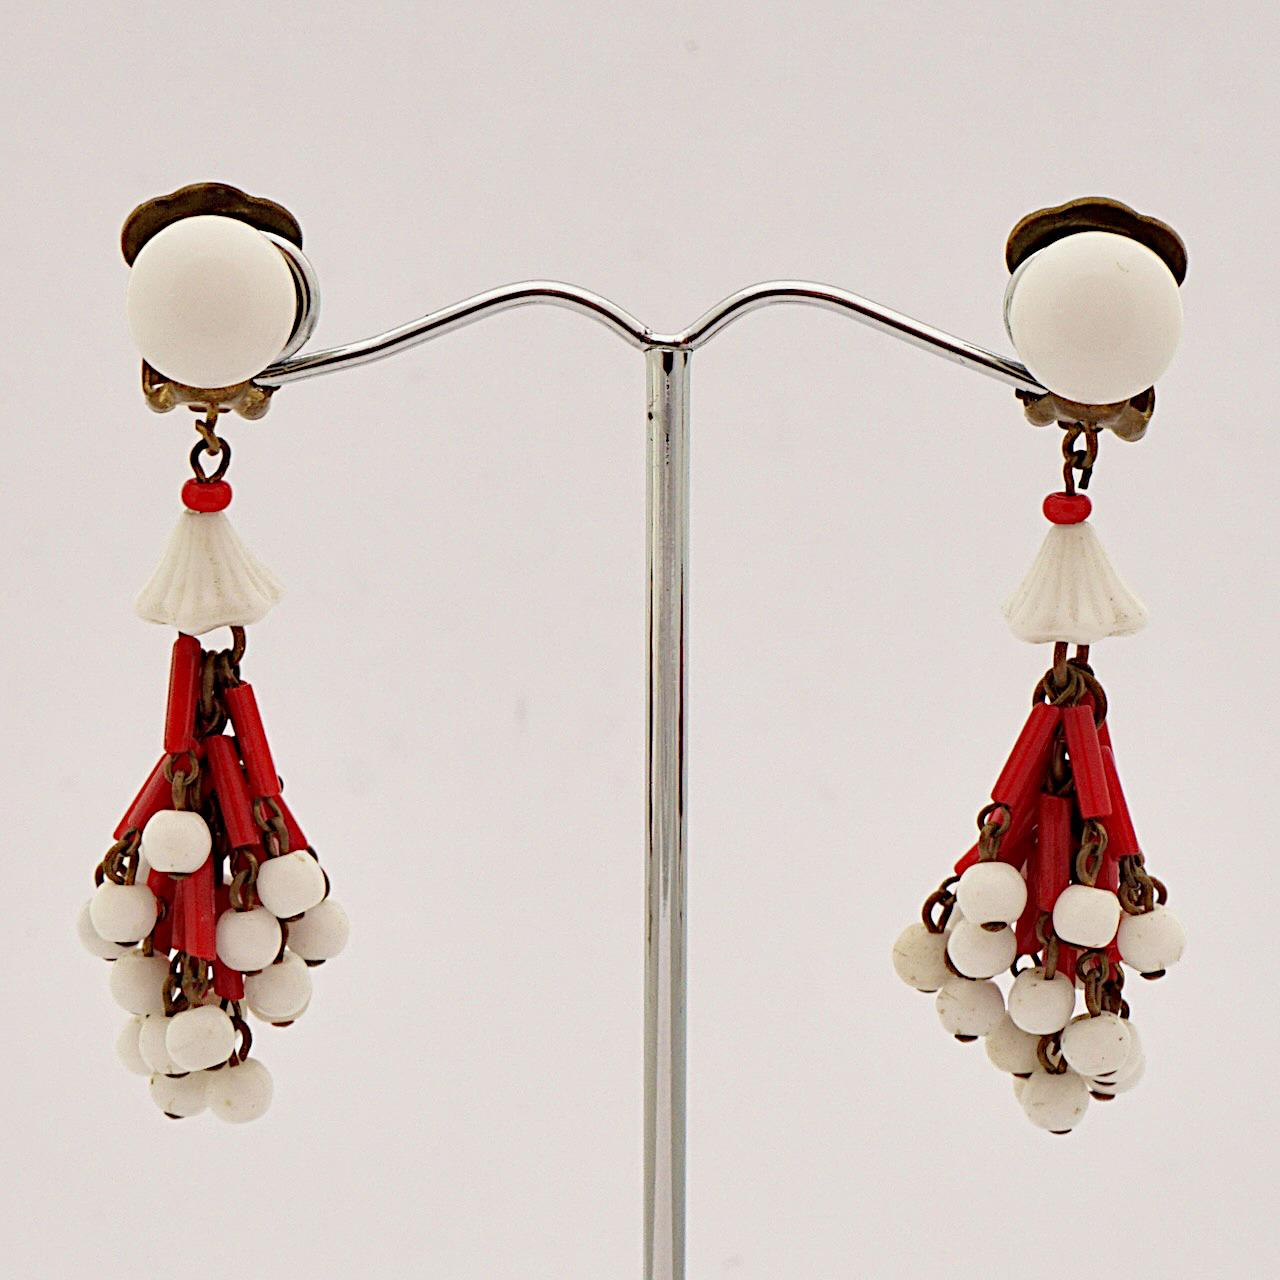 Wunderschöne vergoldete Clip-Ohrringe mit roten und Milchglasperlen. Messlänge 5,5 cm / 2,16 Zoll. Die Vergoldung weist Gebrauchsspuren auf.

Dies ist ein schönes und stilvolles Paar von Vintage-Ohrringe zirka 1940er Jahre fallen.